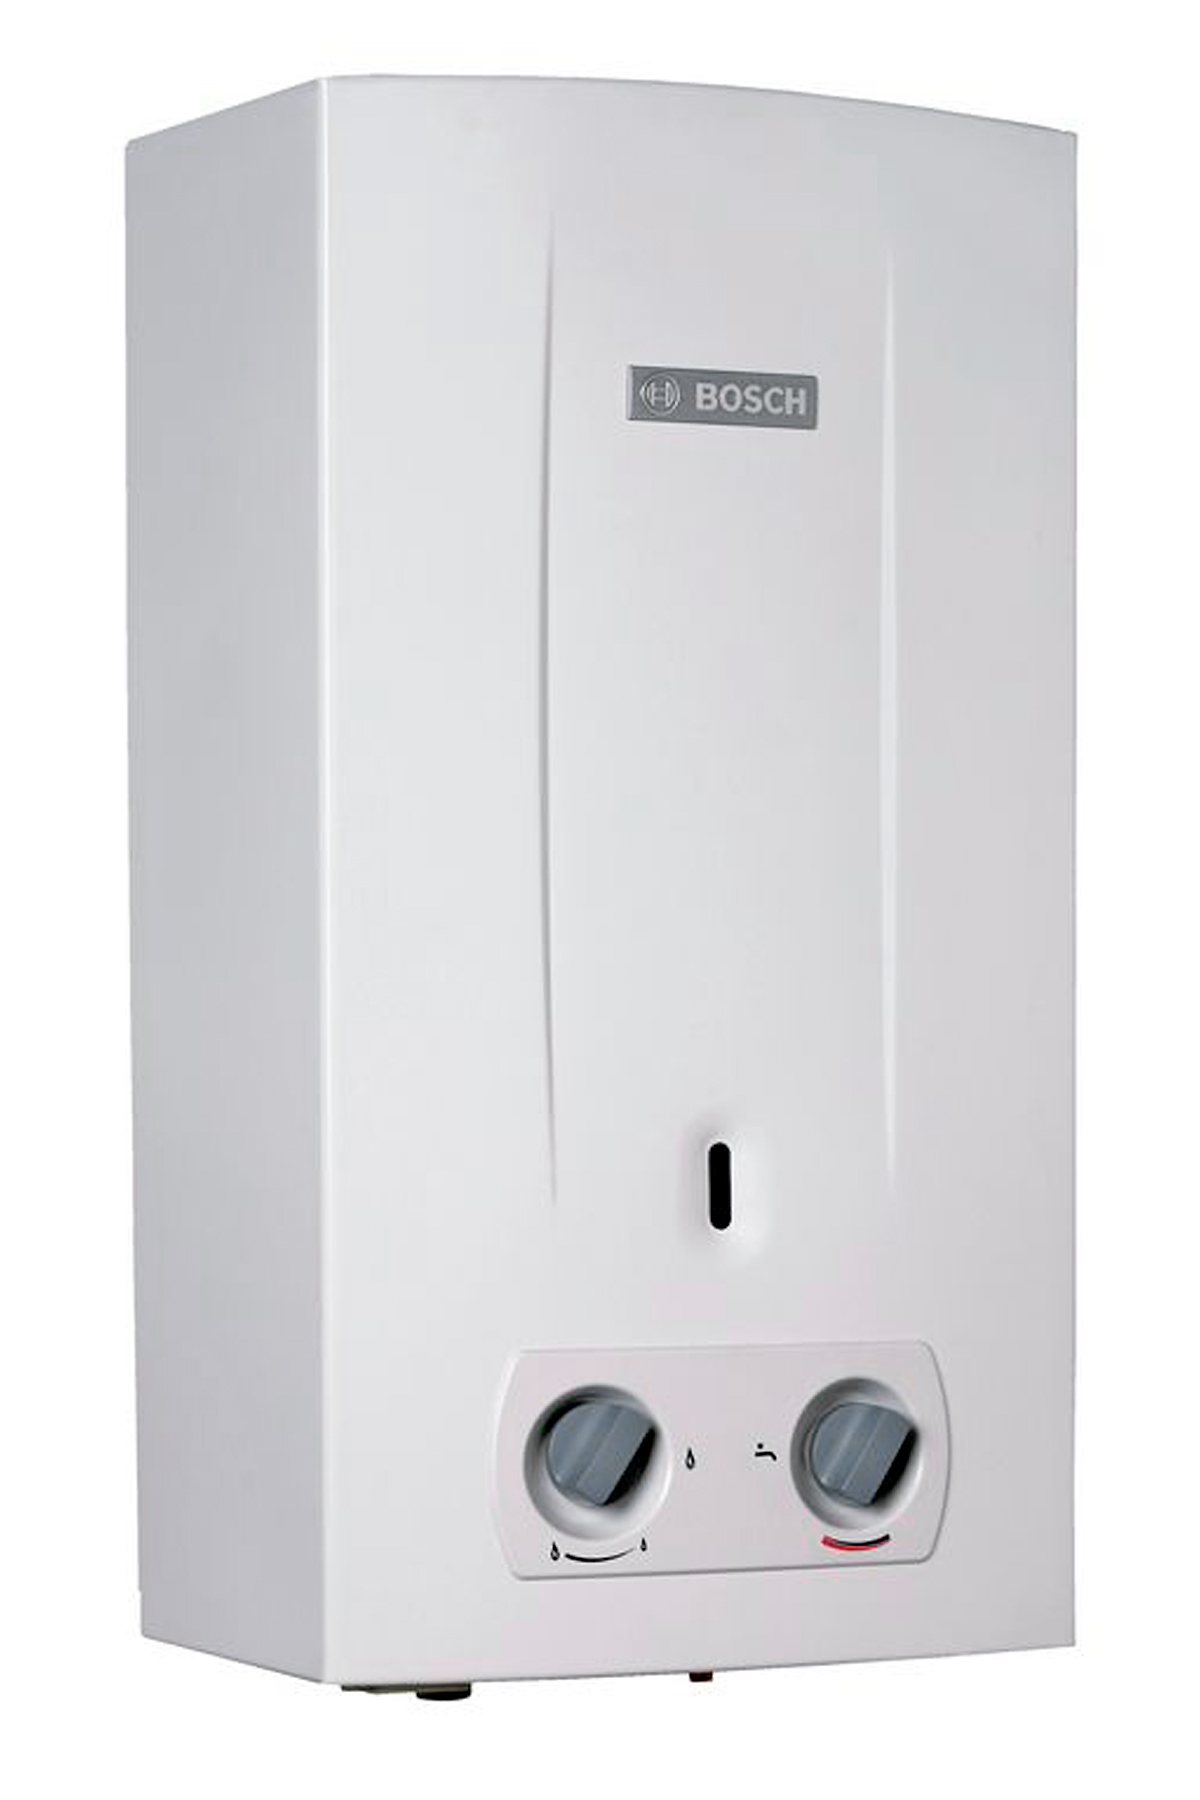 Bosch Therm 2000 O W 10 KB (7736500992)